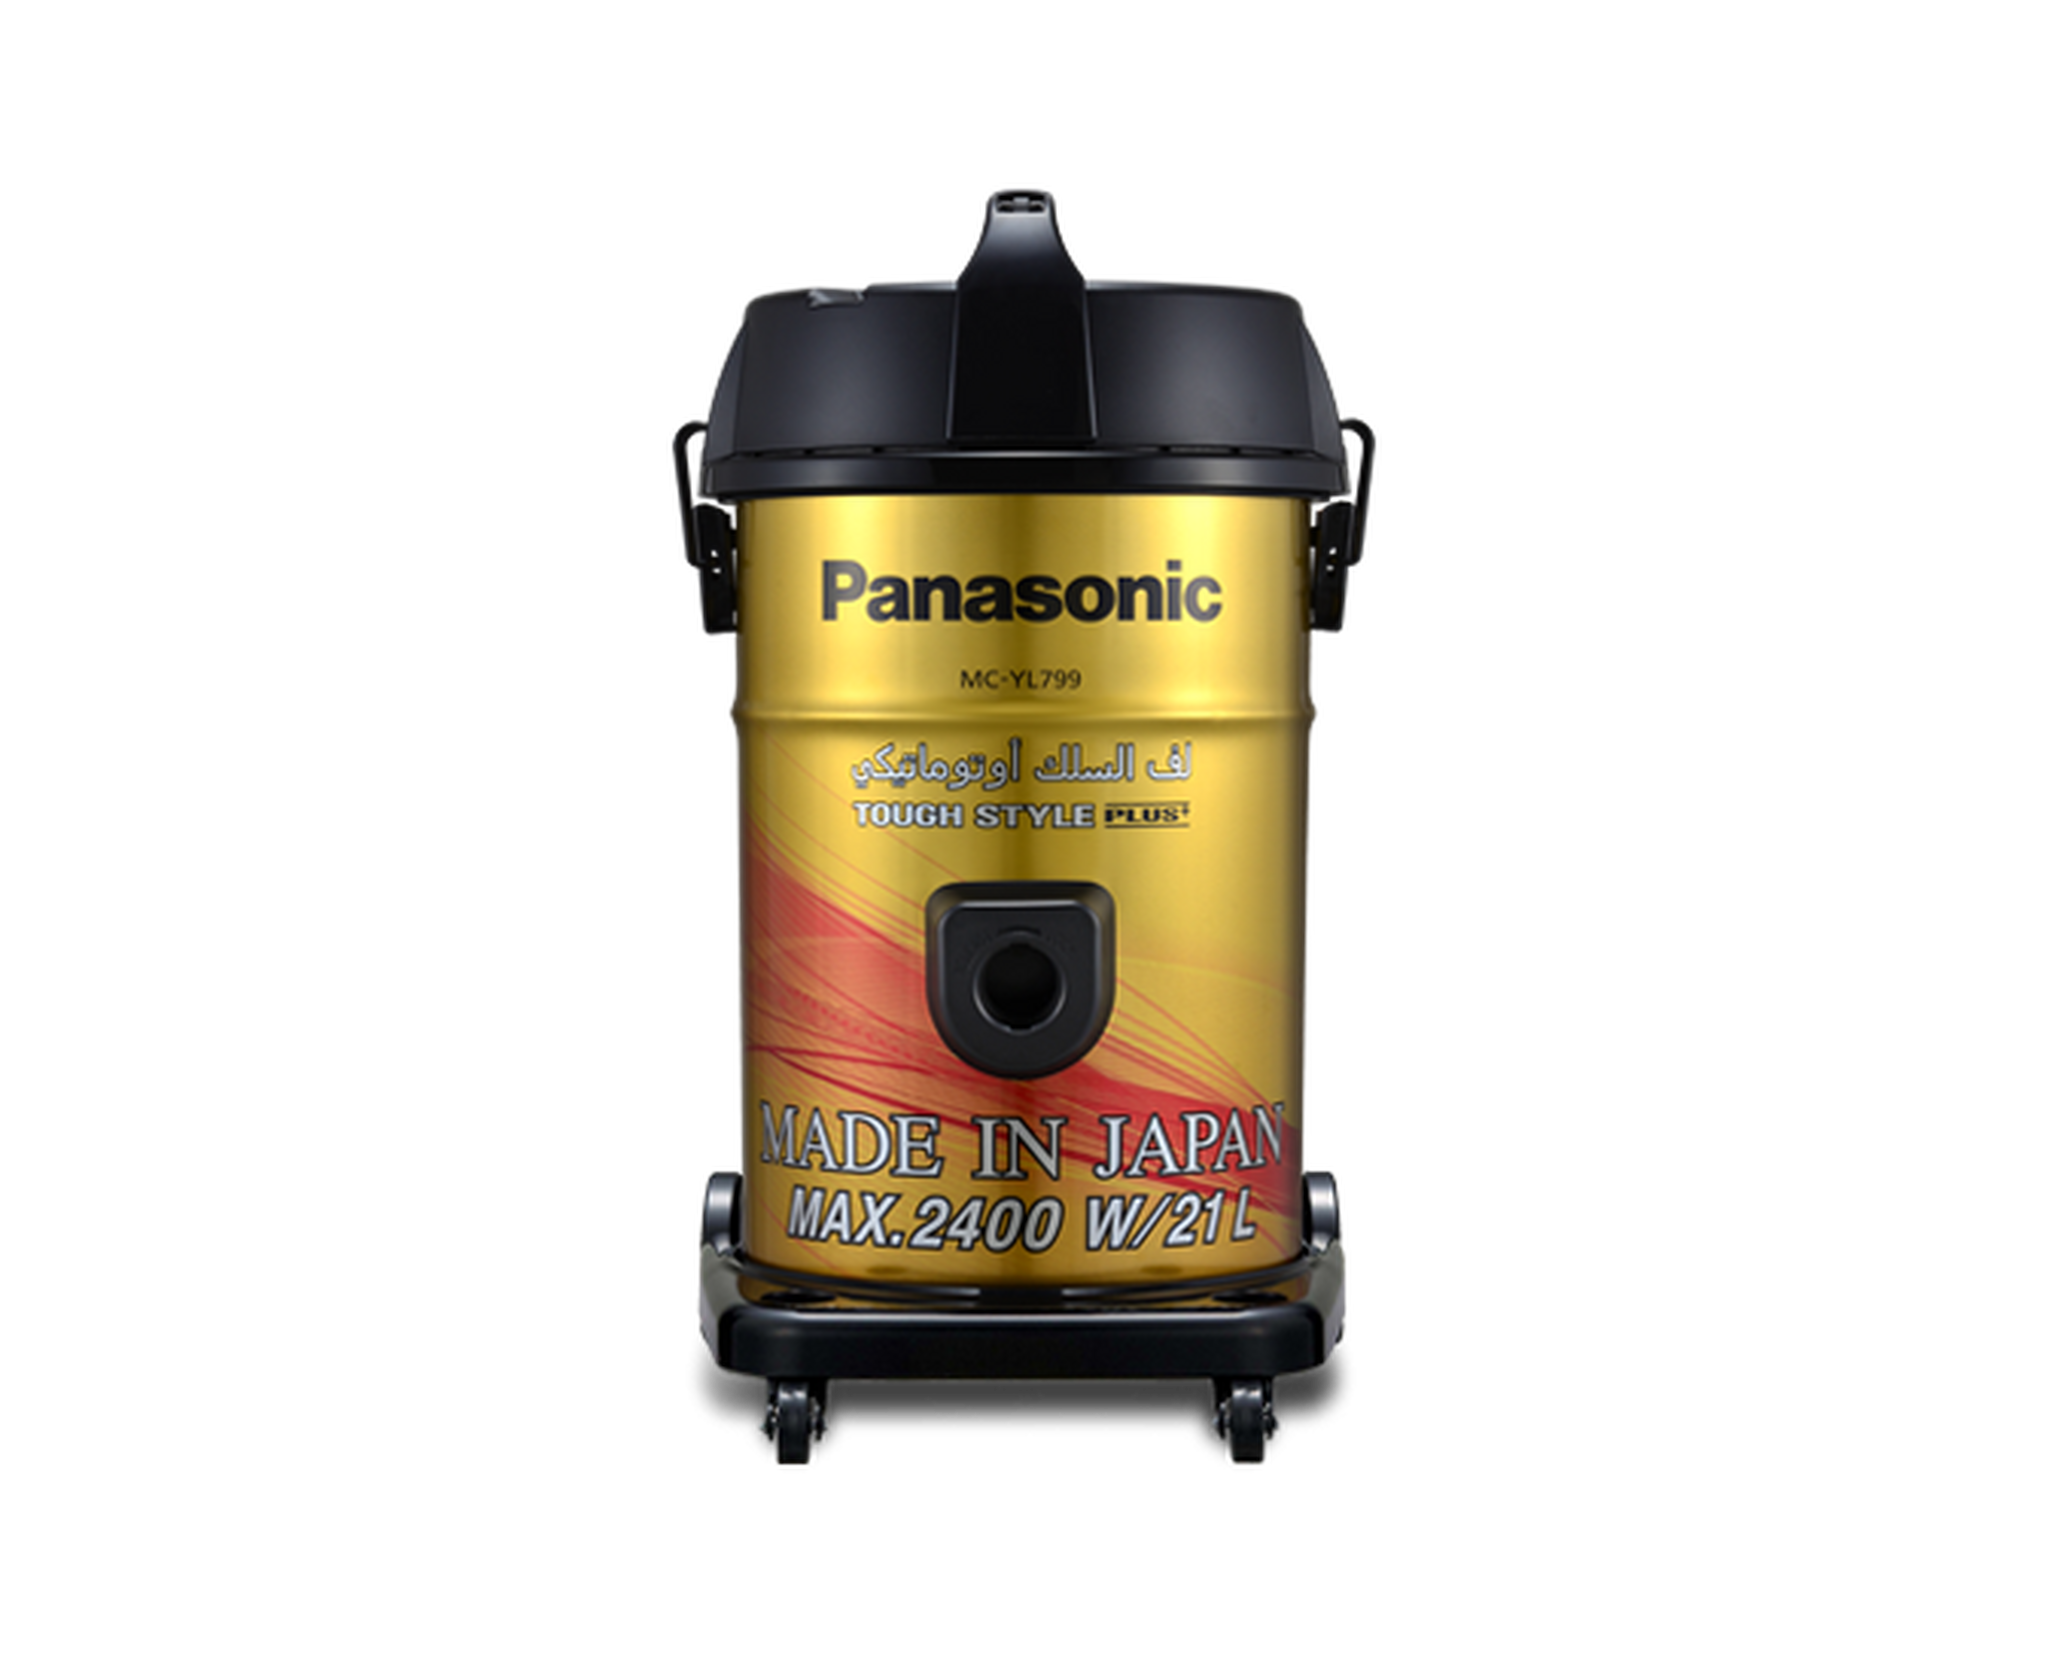 Panasonic 2400W 21L Drum Bagless Vacuum Cleaner (MC-YL799N747) – Yellow